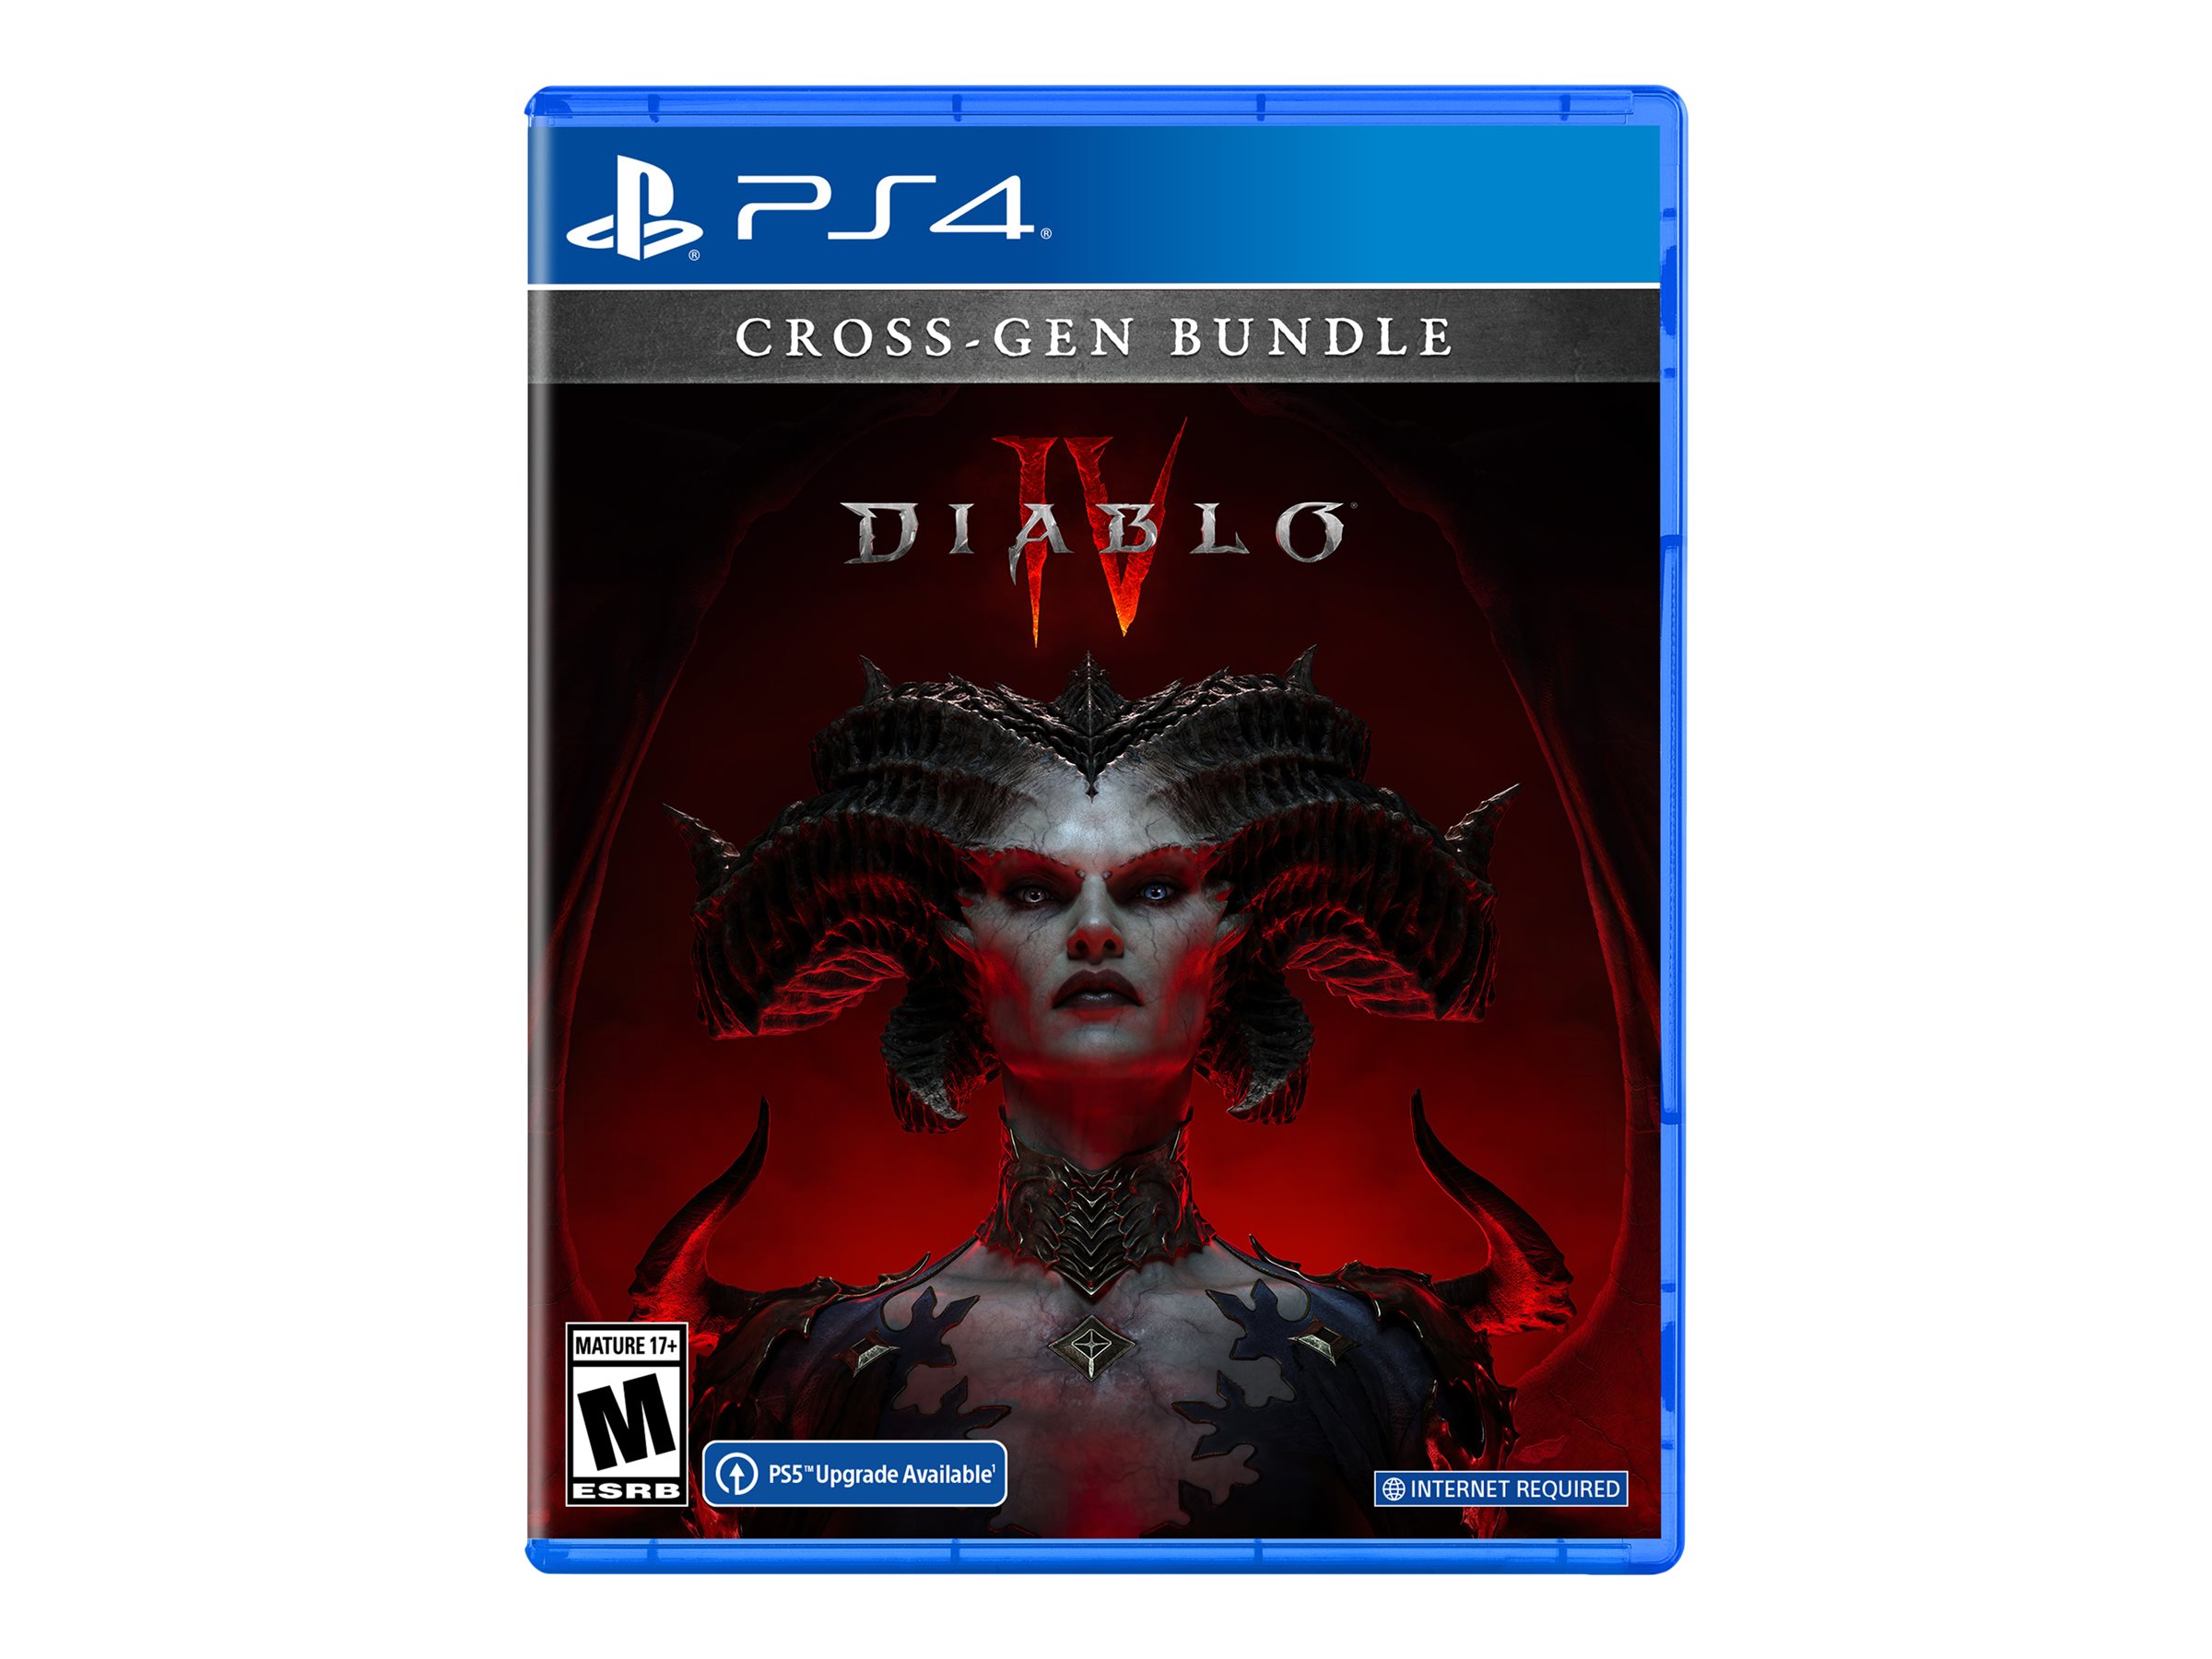 PS4 Diablo IV - Cross-Gen Bundle